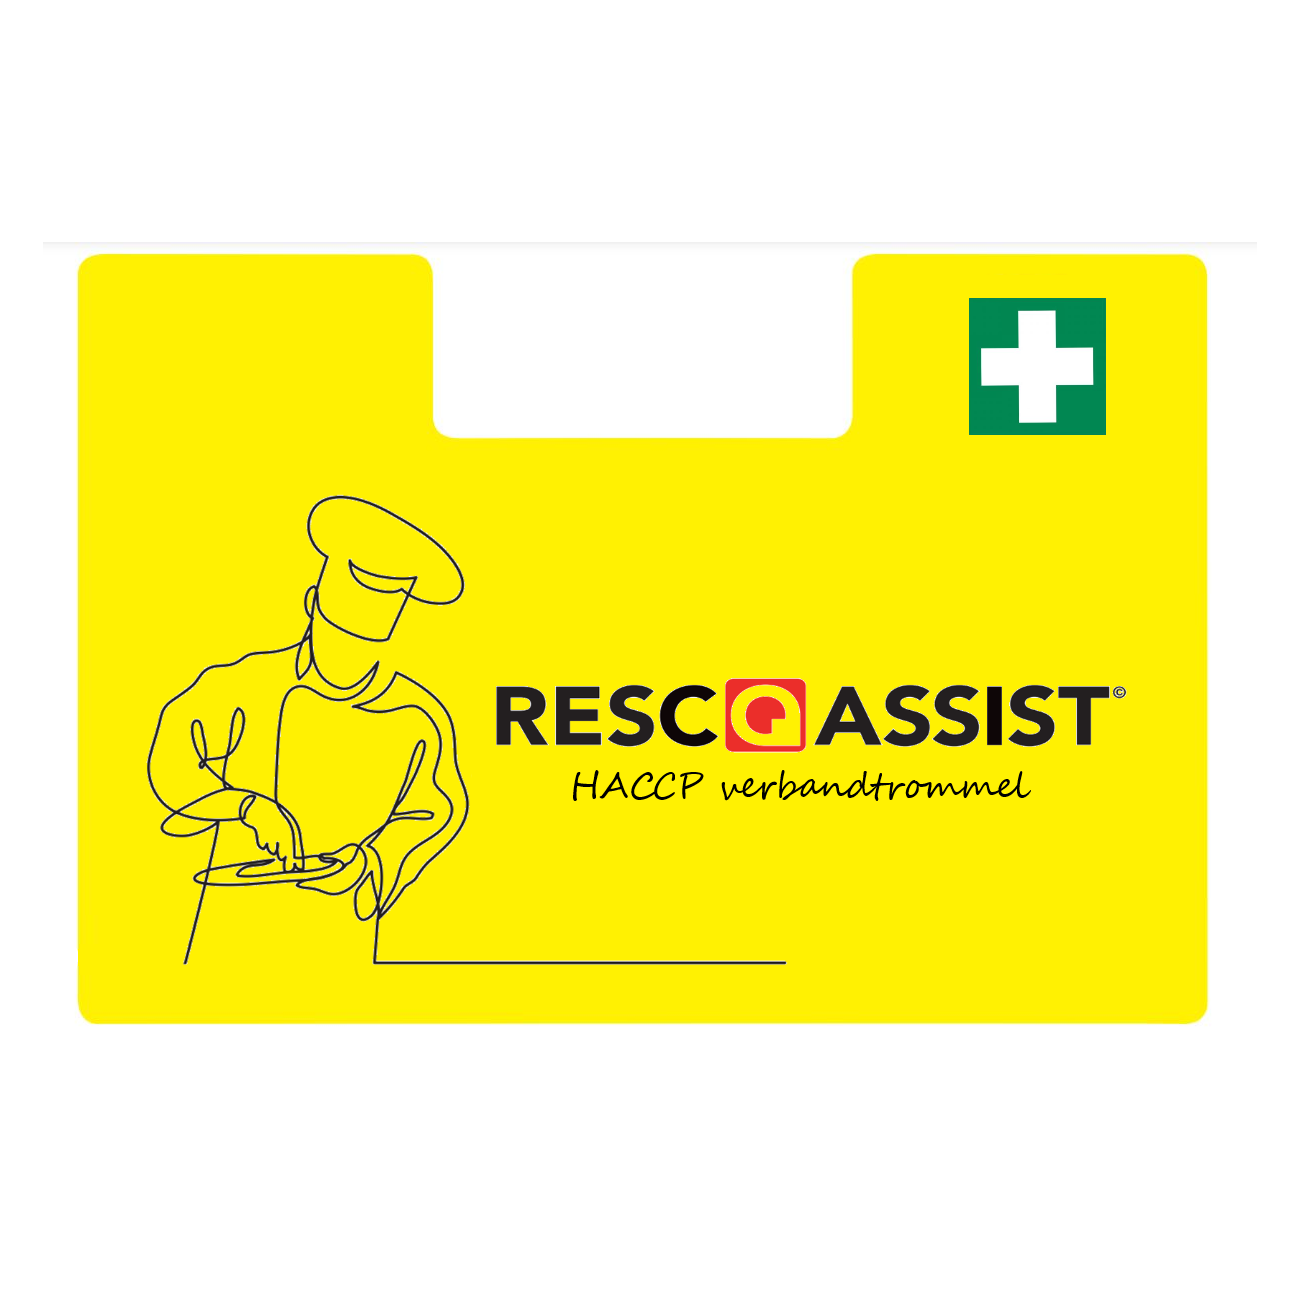 Resc-Q-Assist Verbandtrommel HACCP DIN